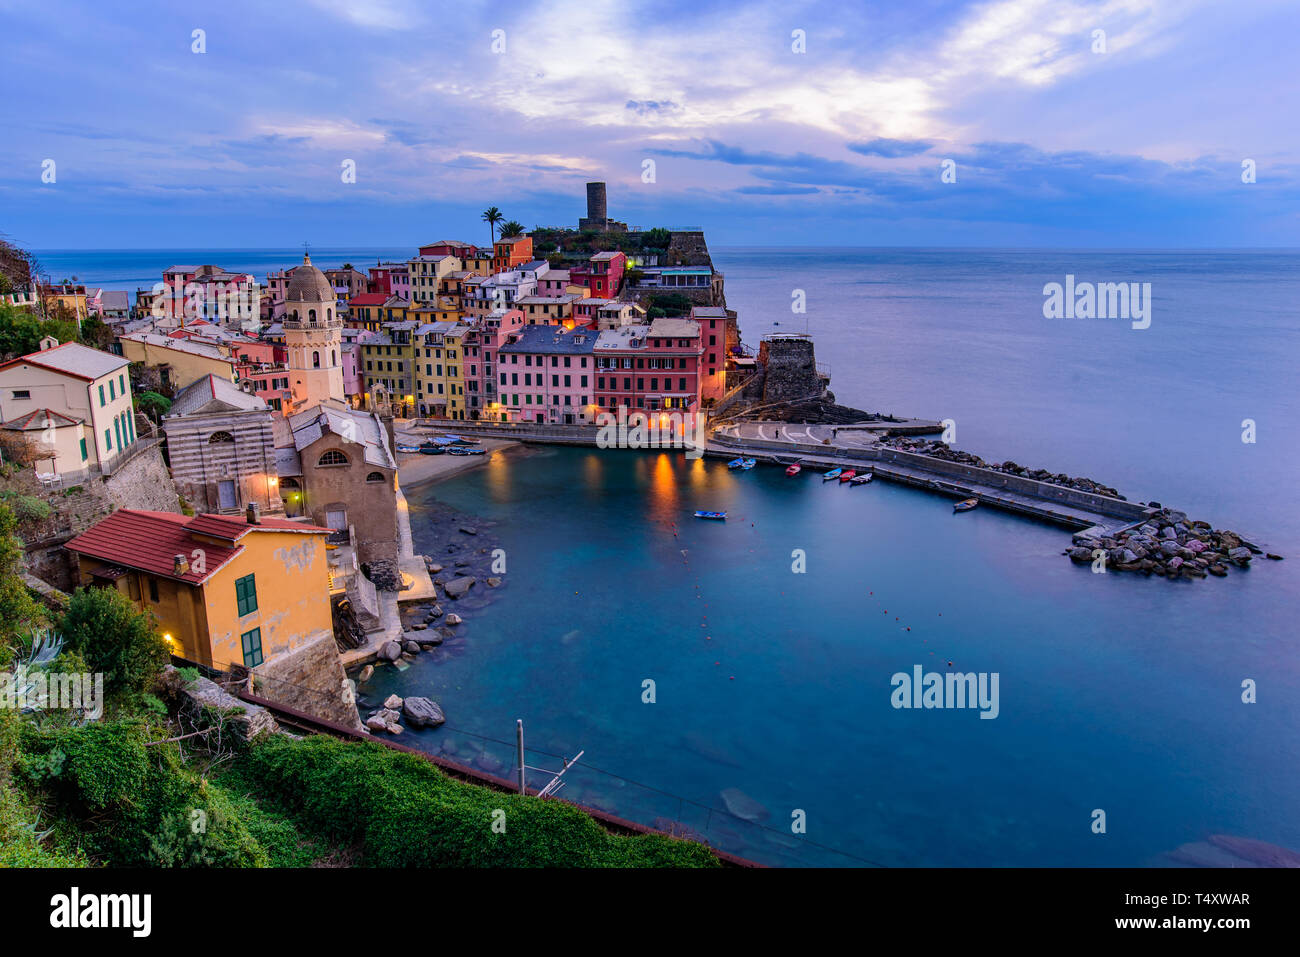 Vue du coucher de Vernazza, l'un des cinq villages méditerranéens à Cinque Terre, Italie, célèbre pour ses maisons colorées et son port Banque D'Images